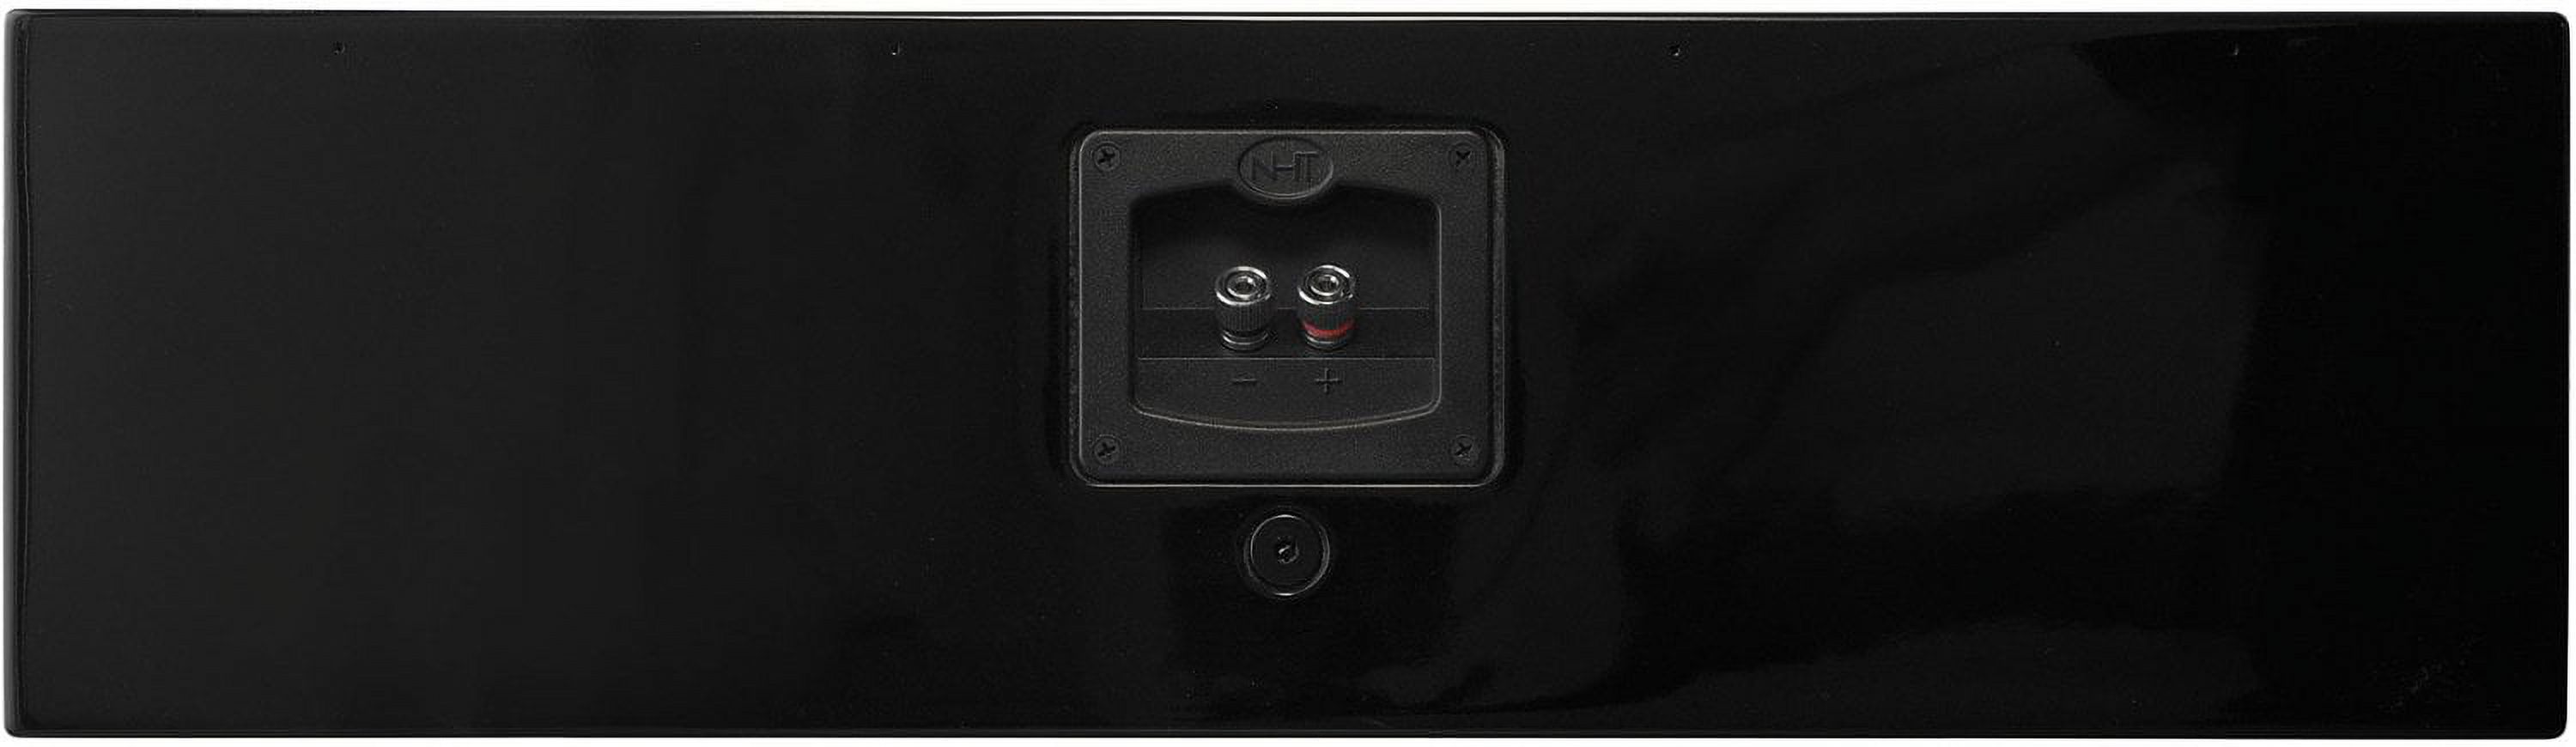 NHT Media Series Slim Center Channel Speaker - High Gloss Black - image 5 of 5